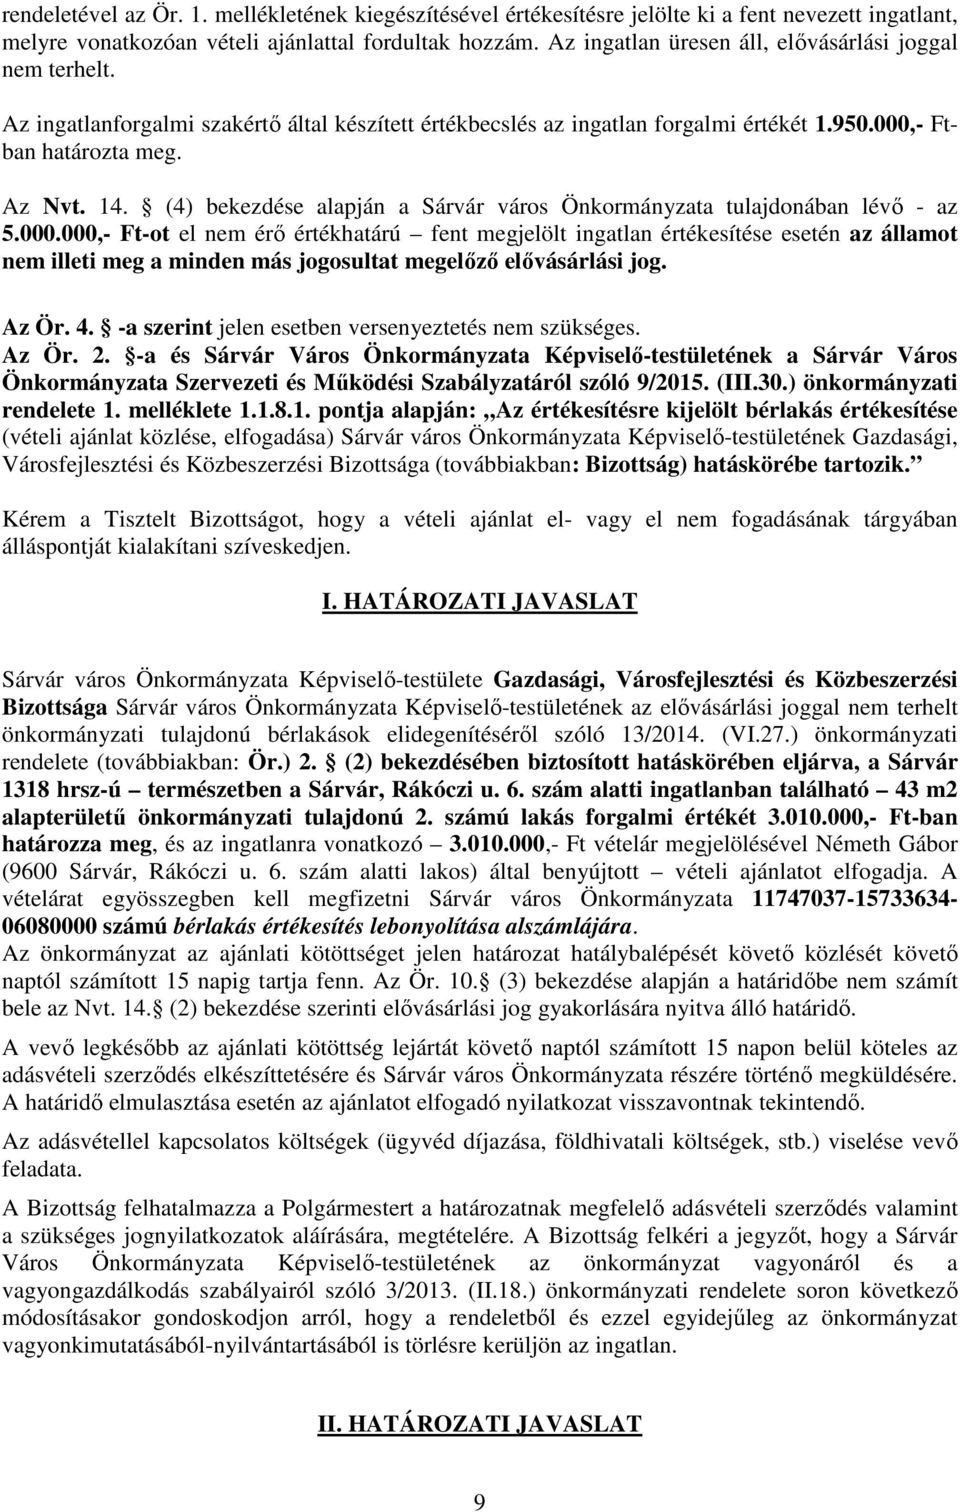 (4) bekezdése alapján a Sárvár város Önkormányzata tulajdonában lévő - az 5.000.